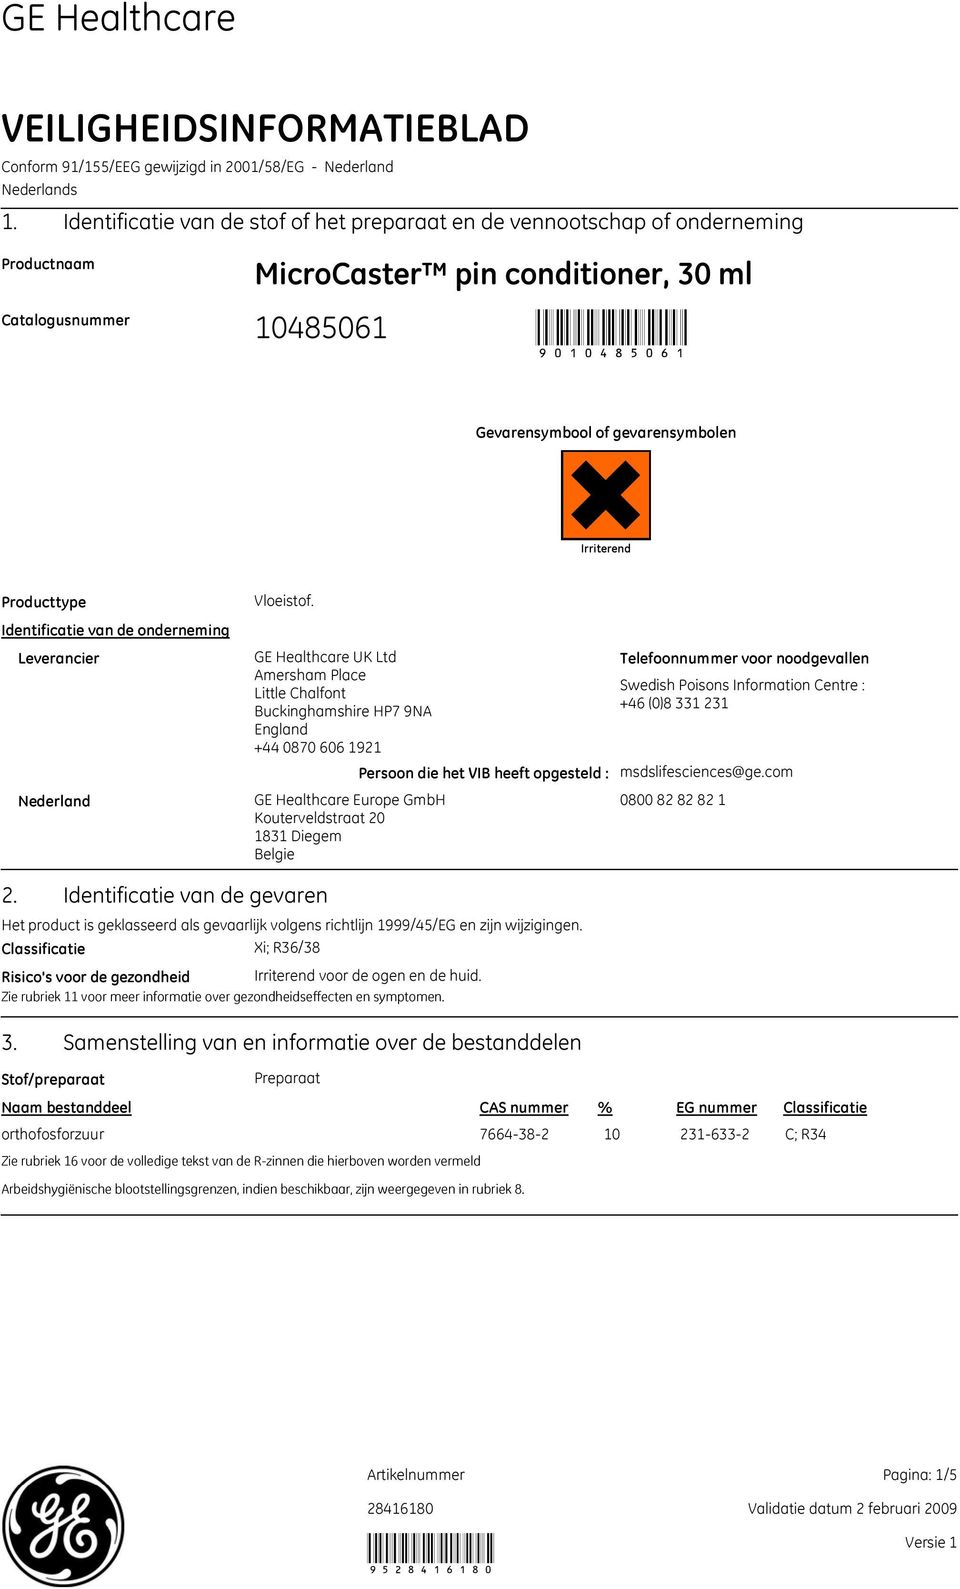 Irriterend Producttype Identificatie van de onderneming Leverancier Nederland Vloeistof.